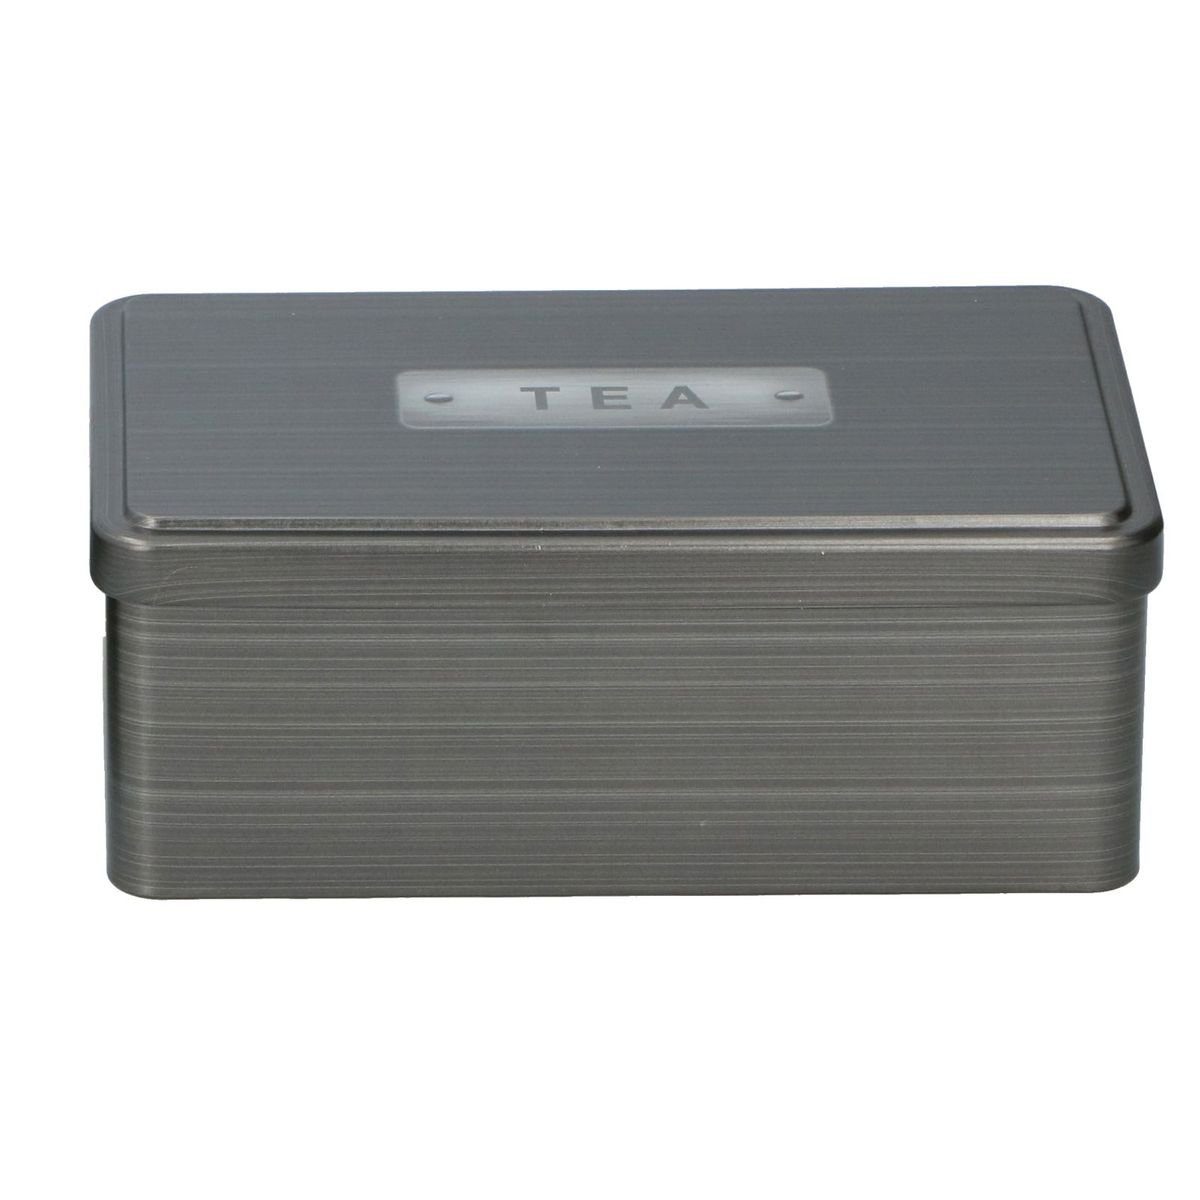 Teebox Metall Teebox "TEA", Blech mit 18x11x7 Aufbewahrungsbox anthrazit cm Shop Aufdruck Marabellas aus